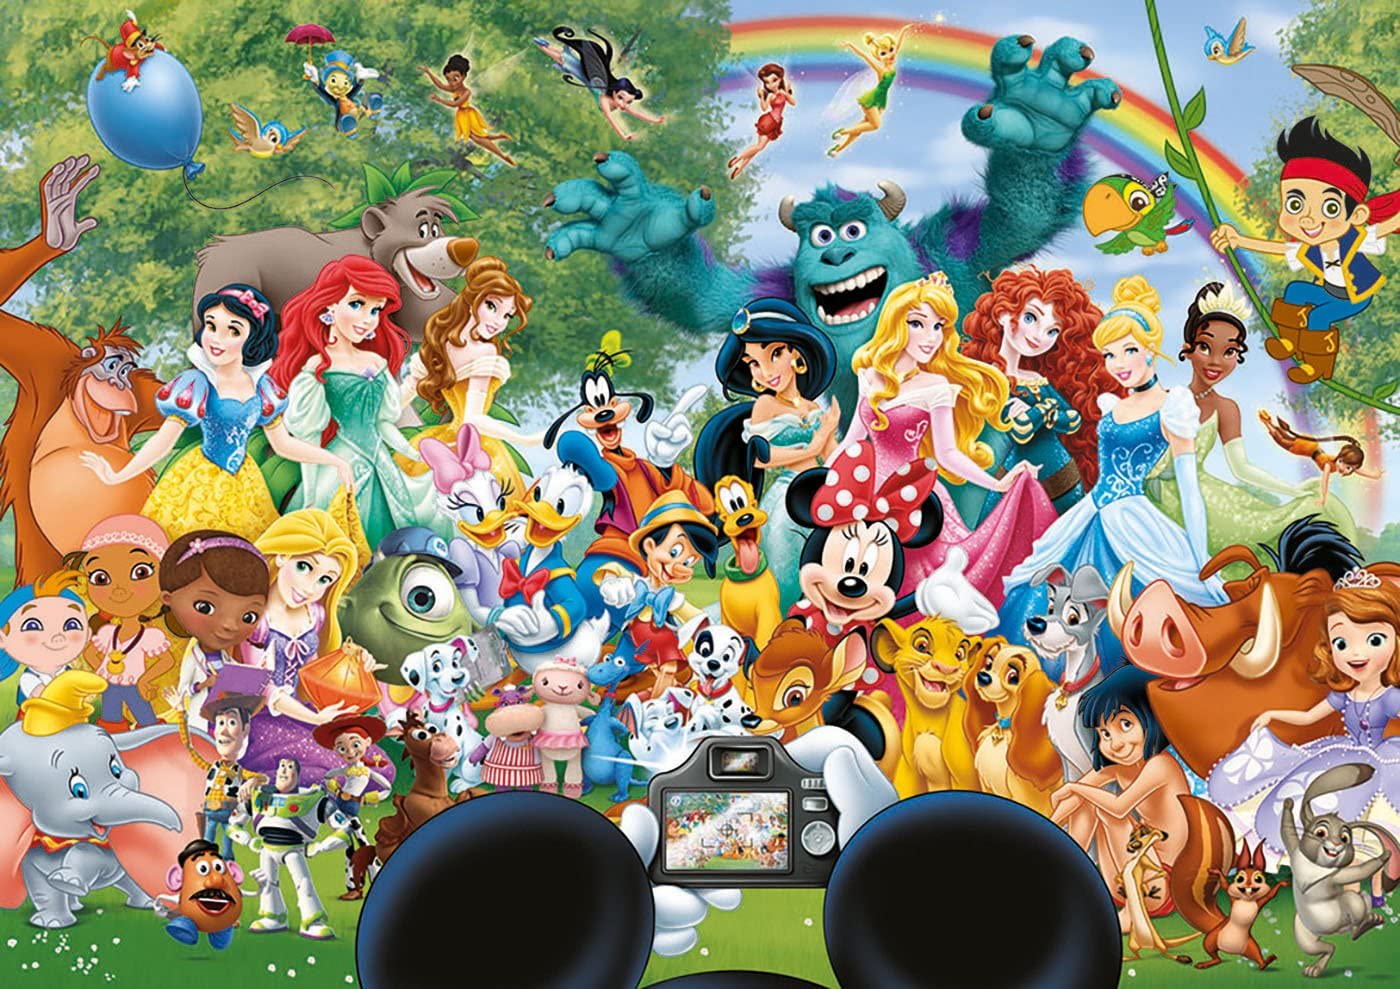 The Wonderful World of Disney af Disney, 1000 brikker puslespil